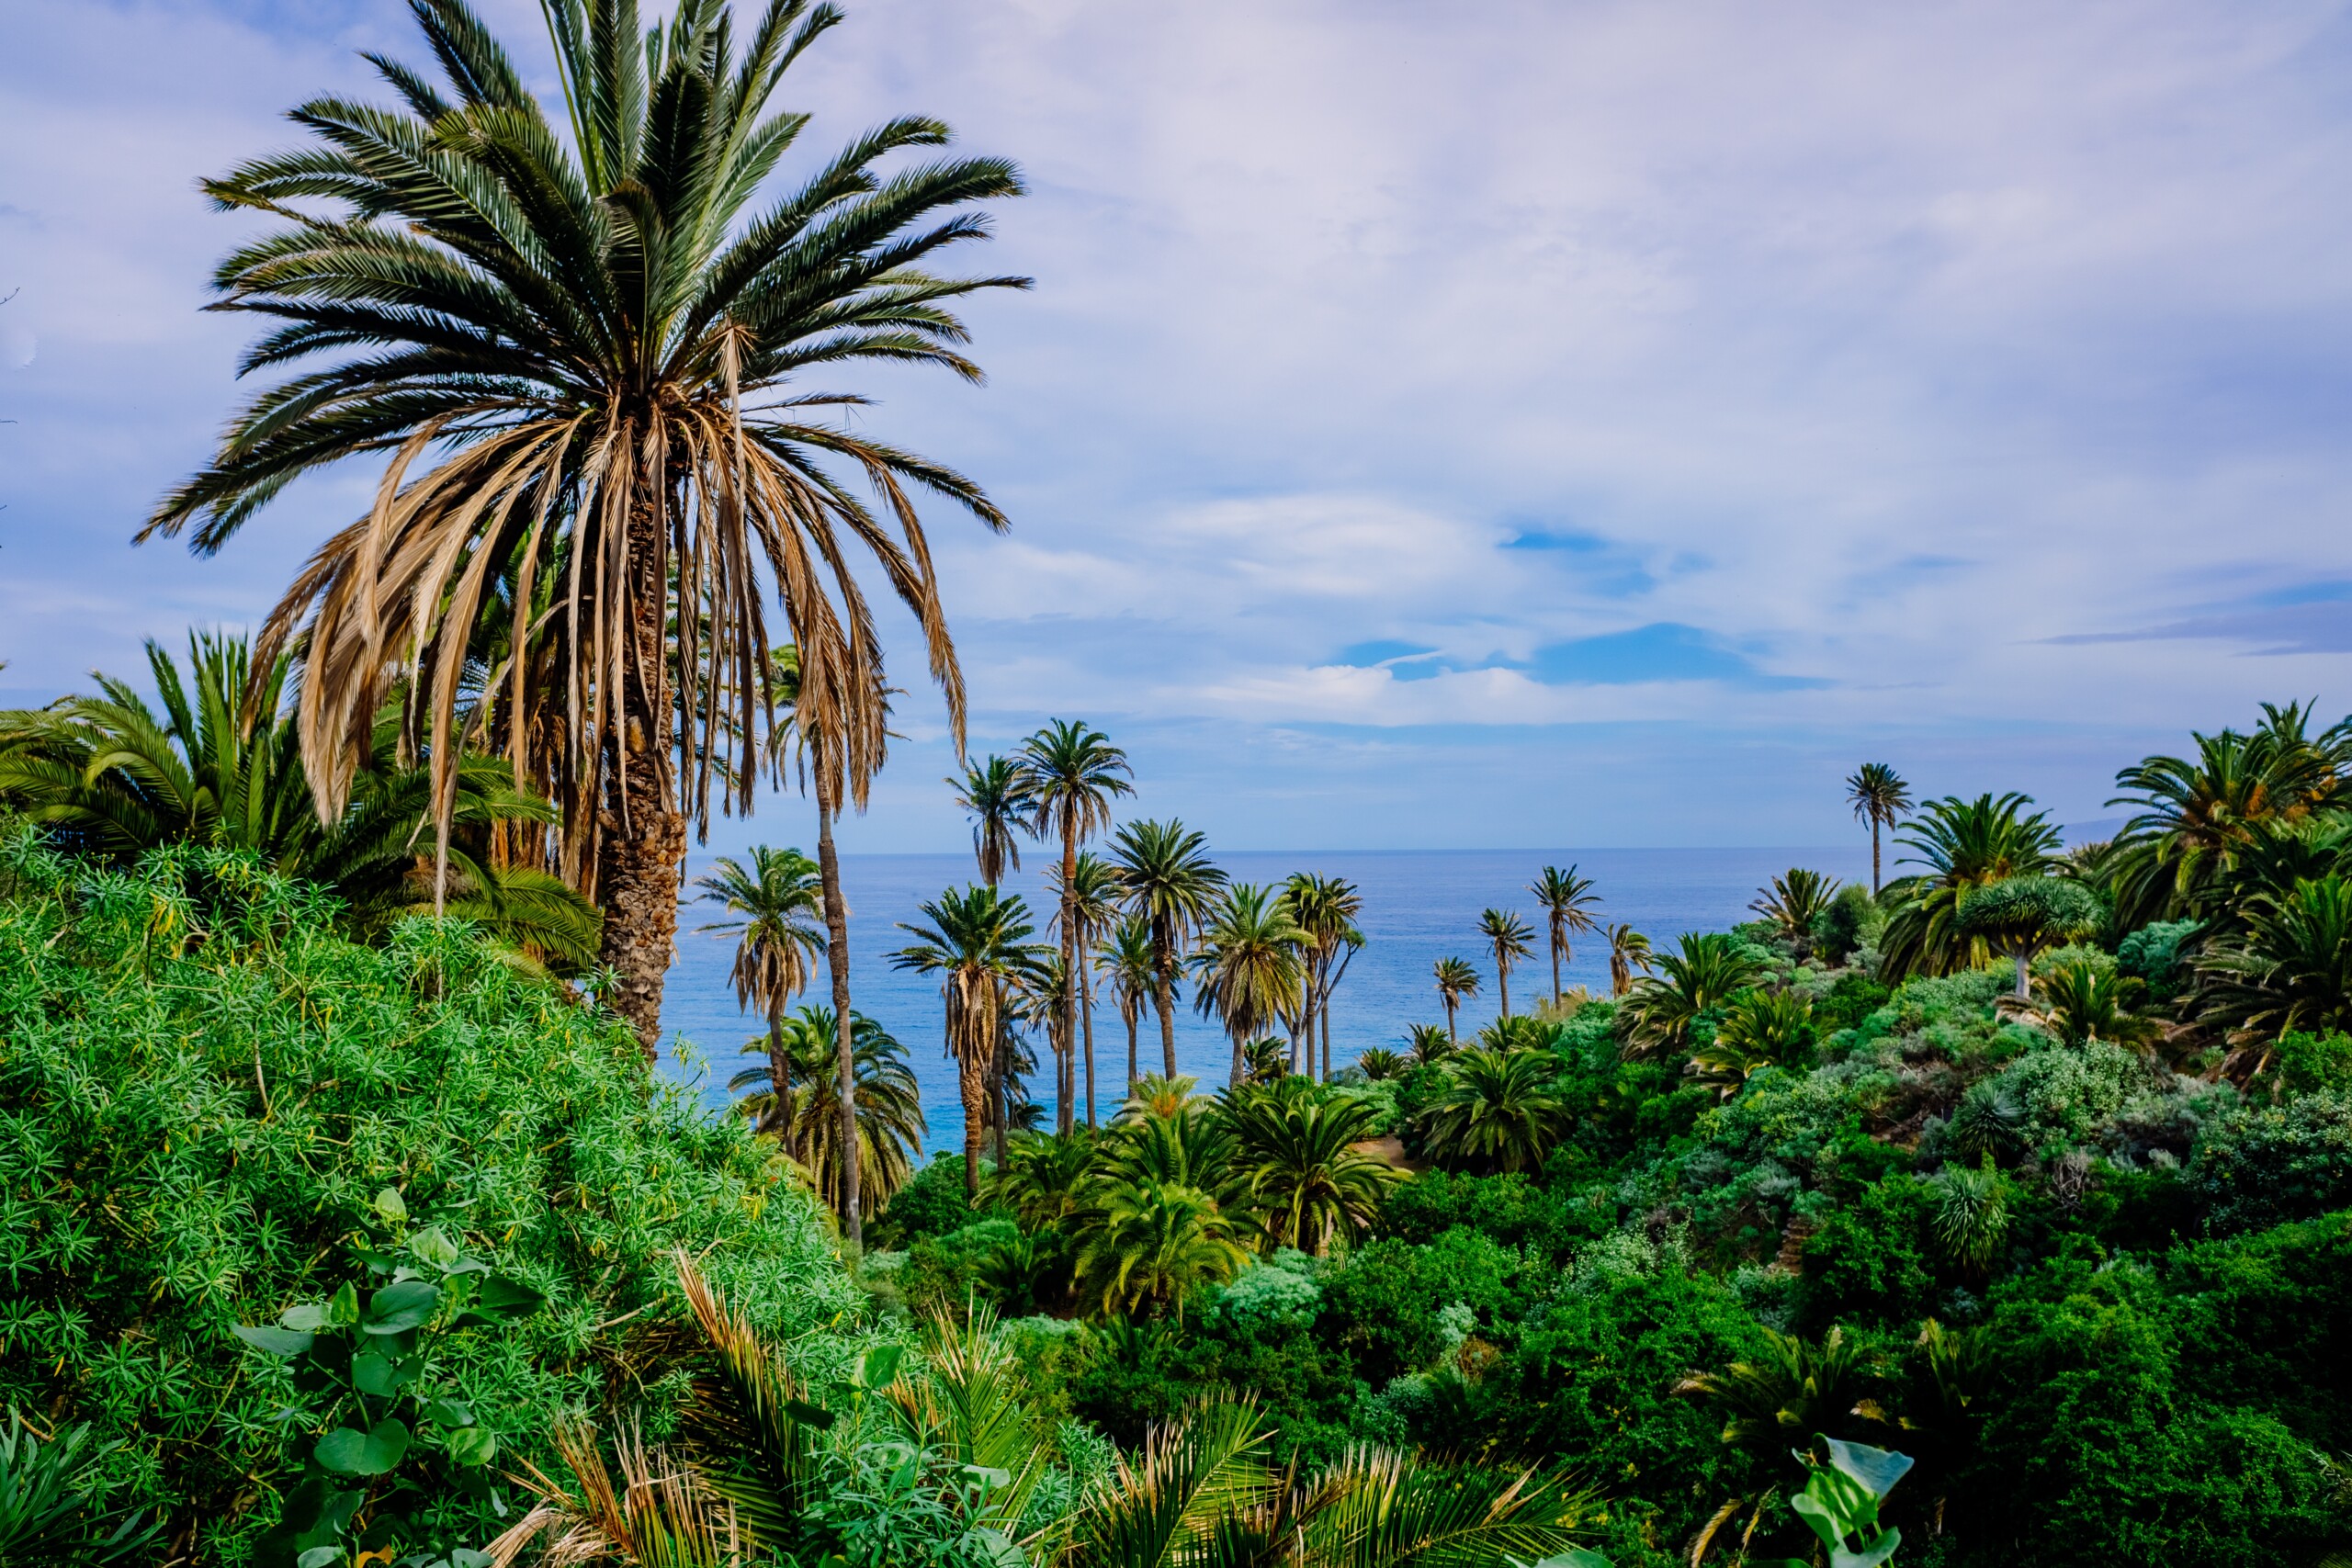 Plantacja bananowców i owoców tropikalnych w pobliżu morza. Teneryfa, Wyspy Kanaryjskie.